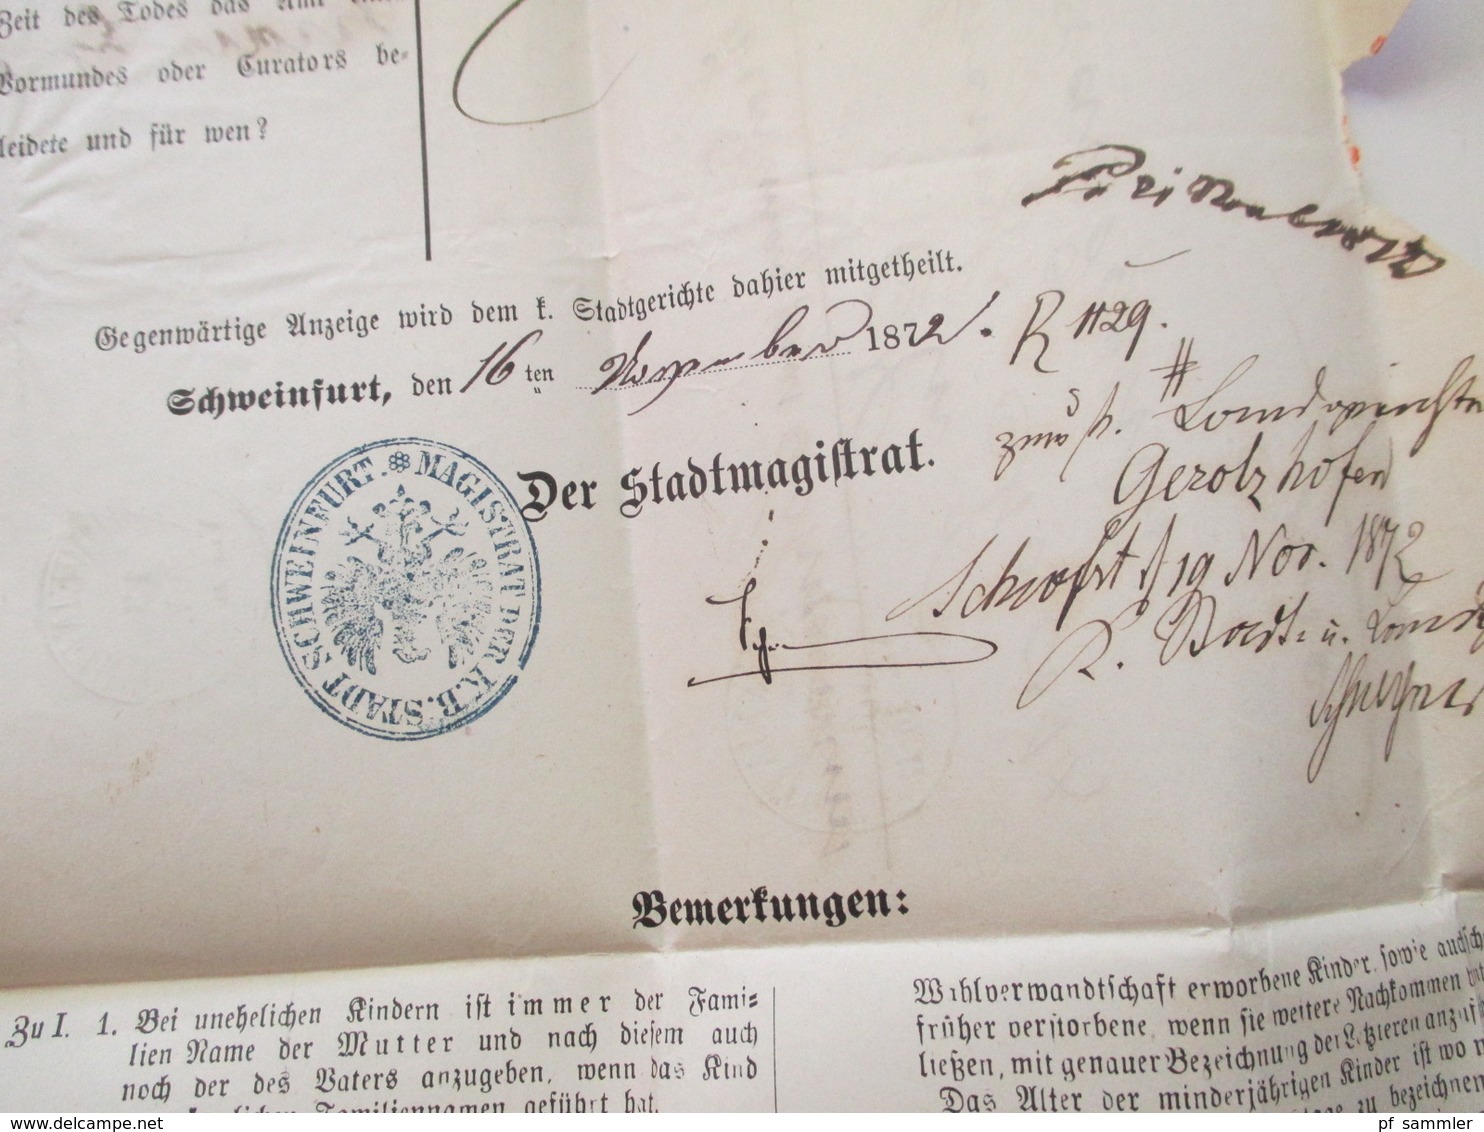 AD Bayern - DR 1809 - 1920er Jahre! Dienstbriefe / Amtsbriefe Markenlos. Viel mit Inhalt. Farbige Stempel. 100 Stk